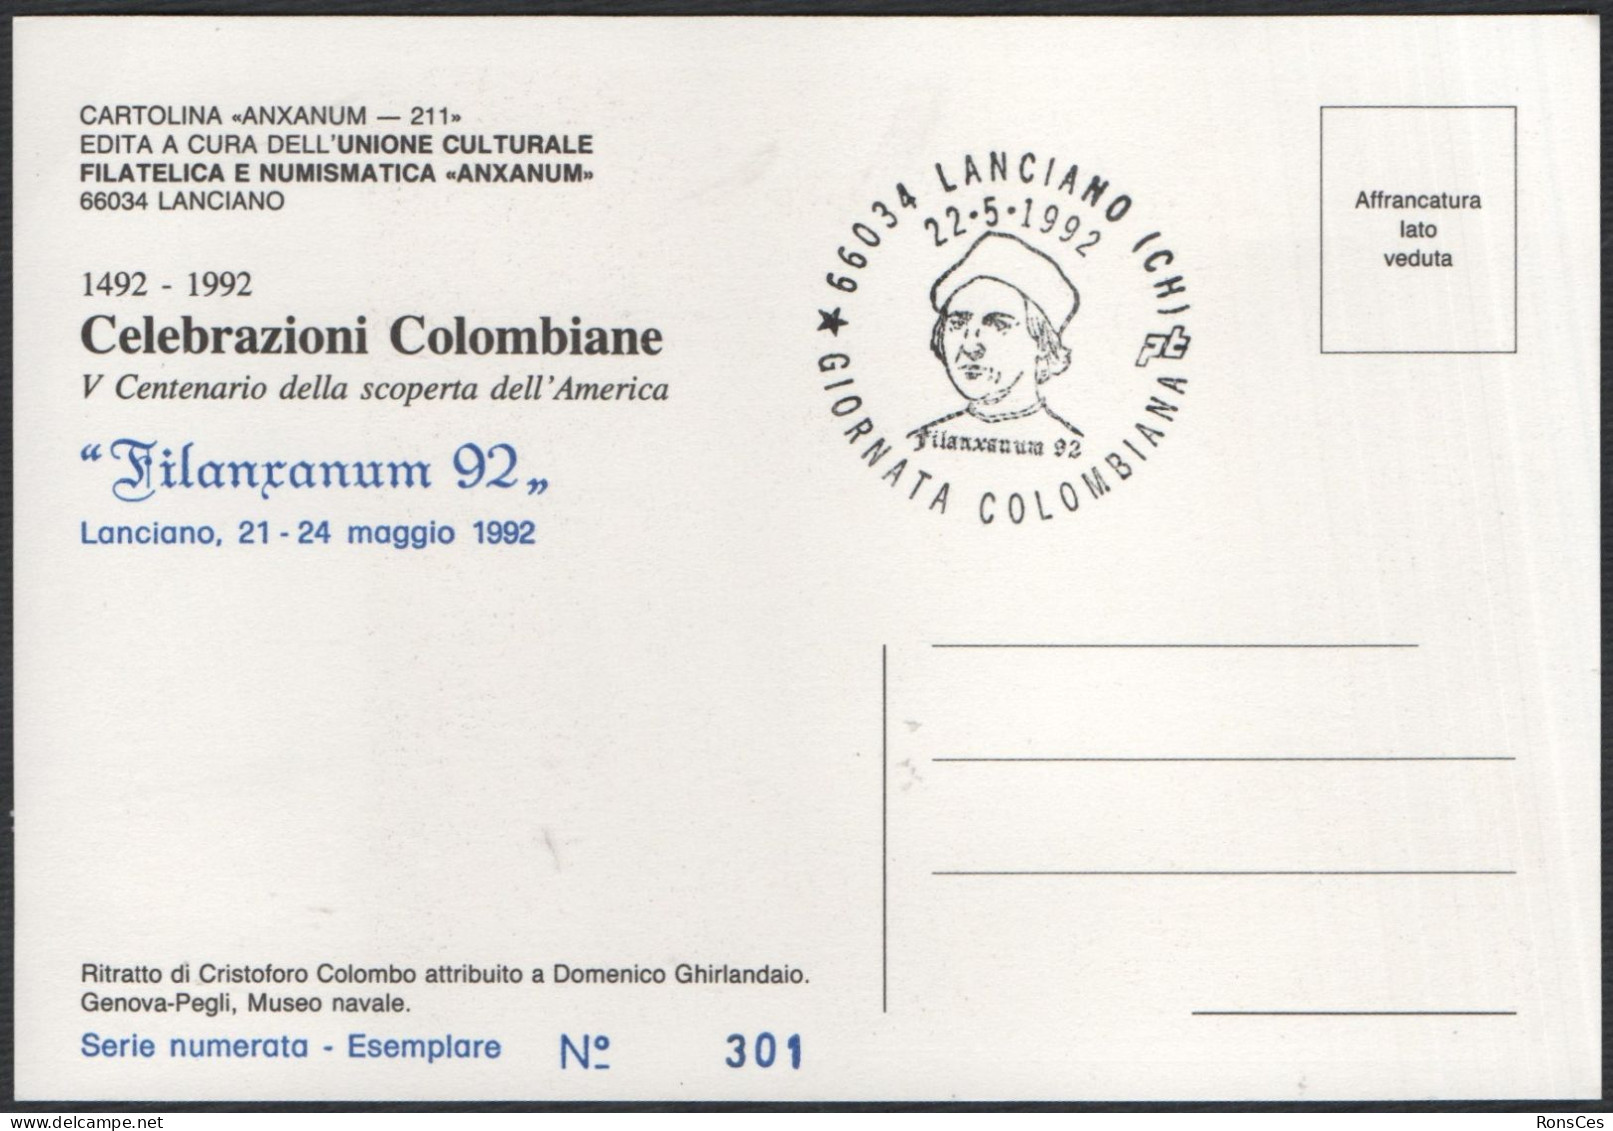 ITALIA LANCIANO (CH) 22.05.1992 - FILANXANUM '92 - GIORNATA COLOMBIANA - CARTOLINA UFFICIALE - A - Exposiciones Filatélicas